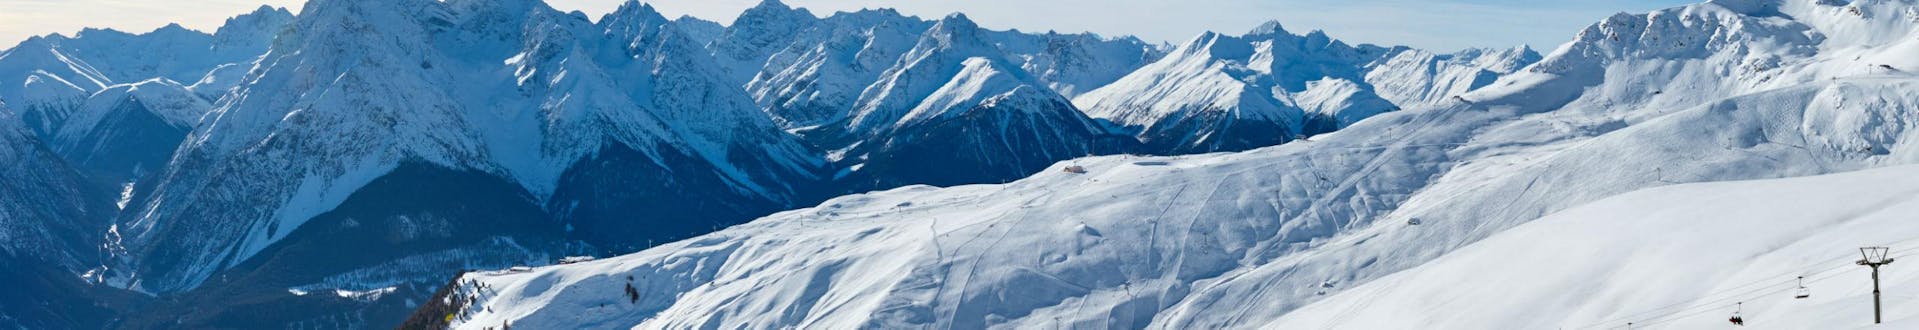 Ein herrliches Panorama über die Skipisten im schweizer Skigebiet Scuol - Motta Naluns, wo örtliche Skischulen eine Reihe an Skikursen anbieten.